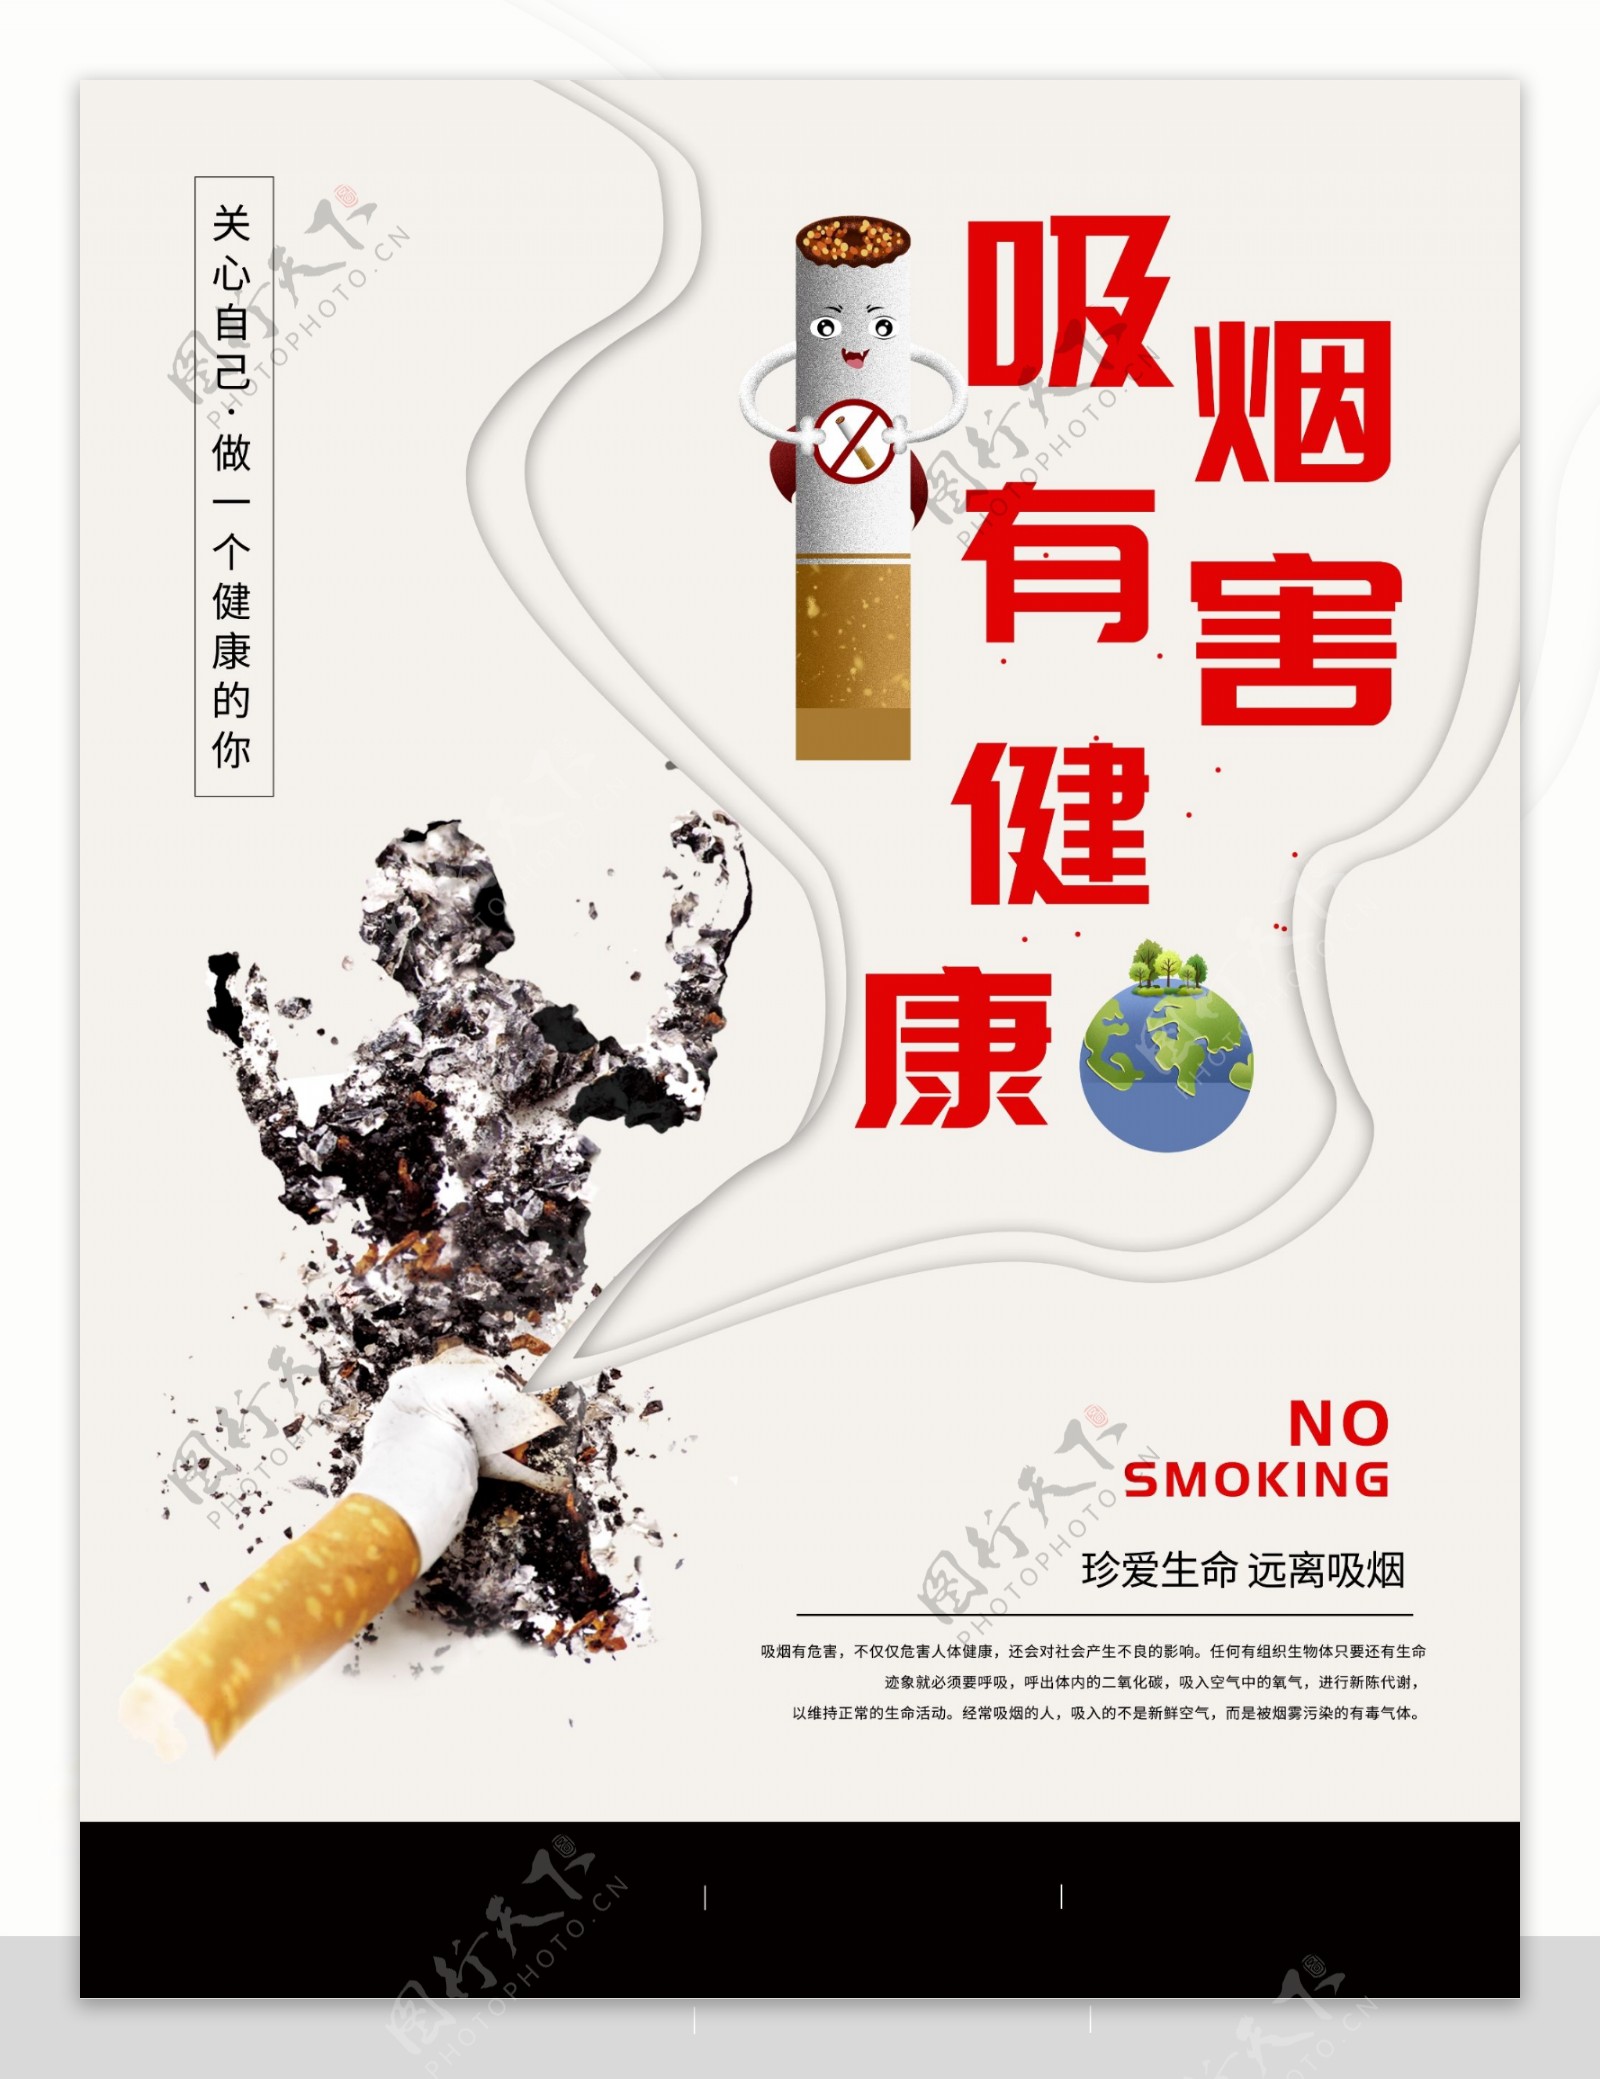 吸烟有害健康公益海报